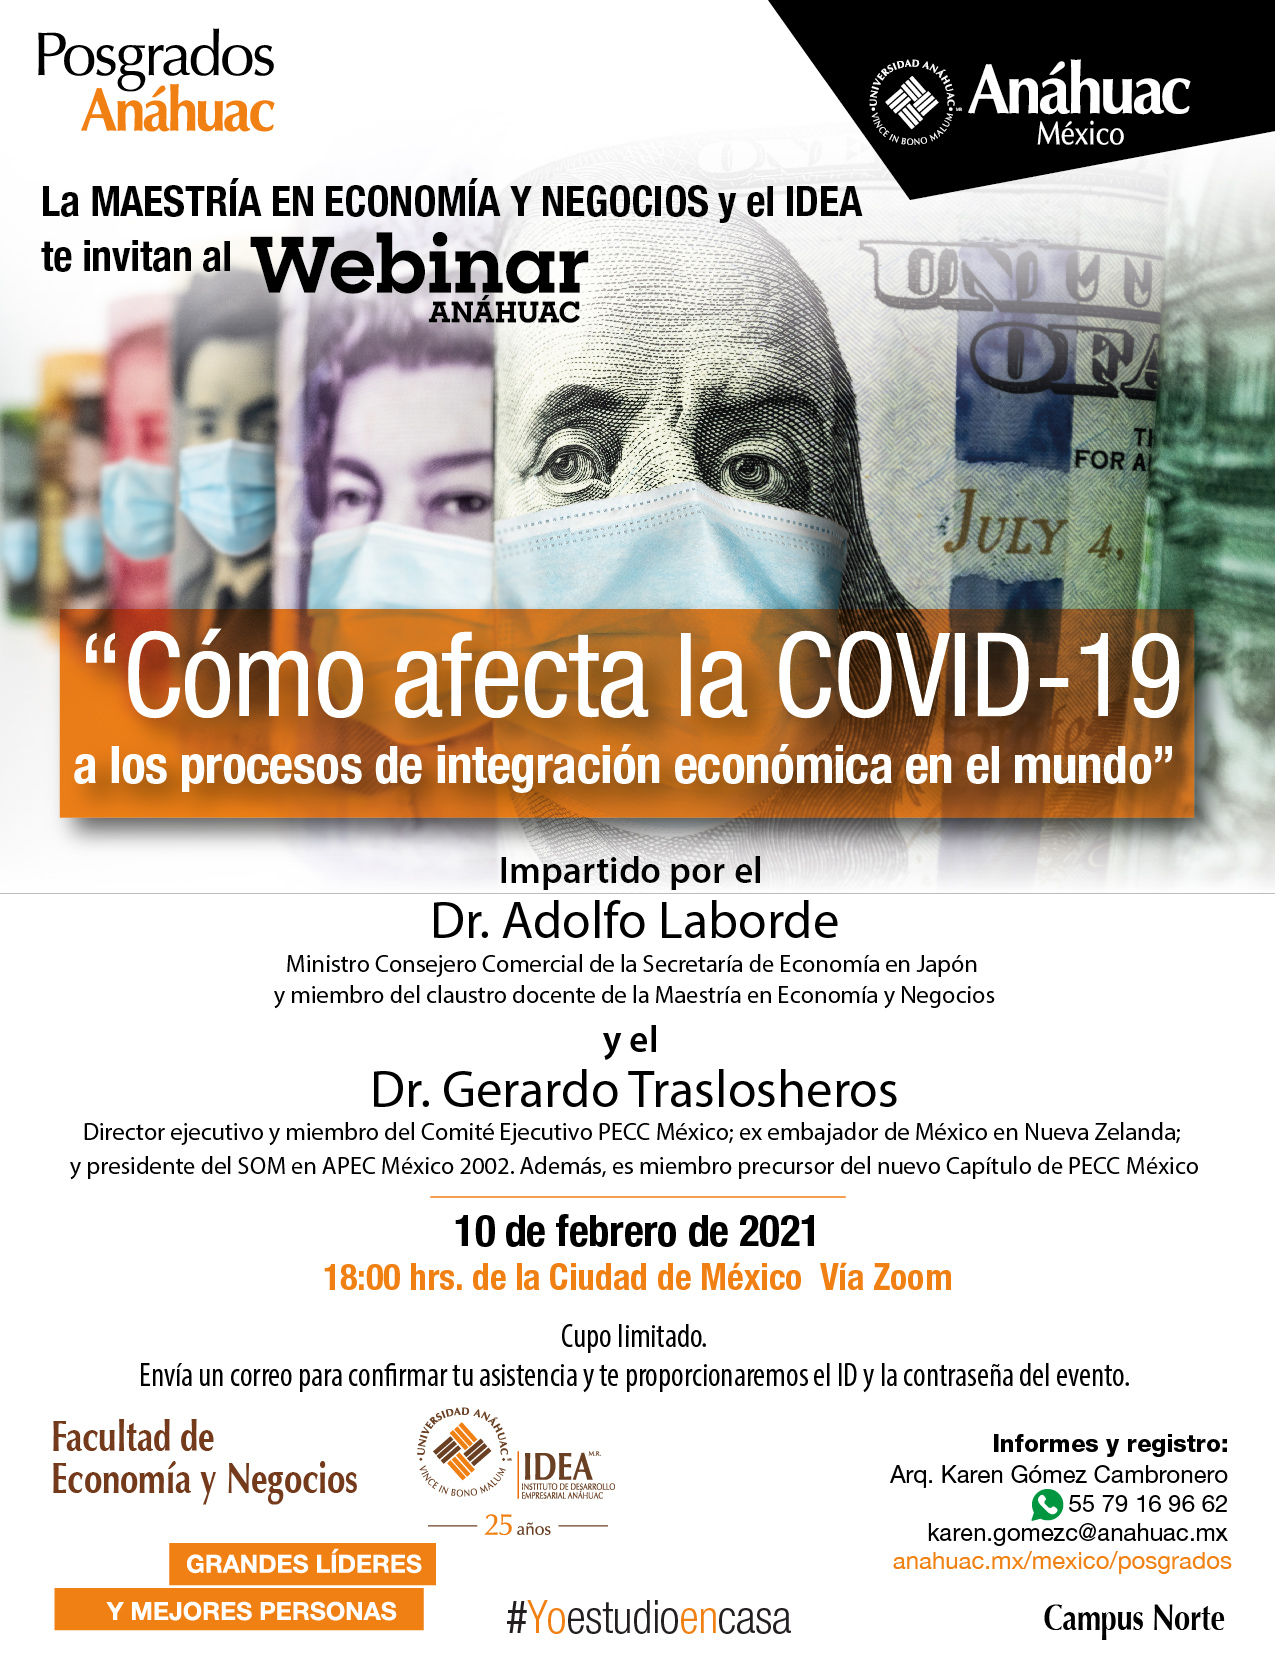 Únete al webinar, "Cómo afecta el COVID-19 a los procesos de integración económica en el mundo"